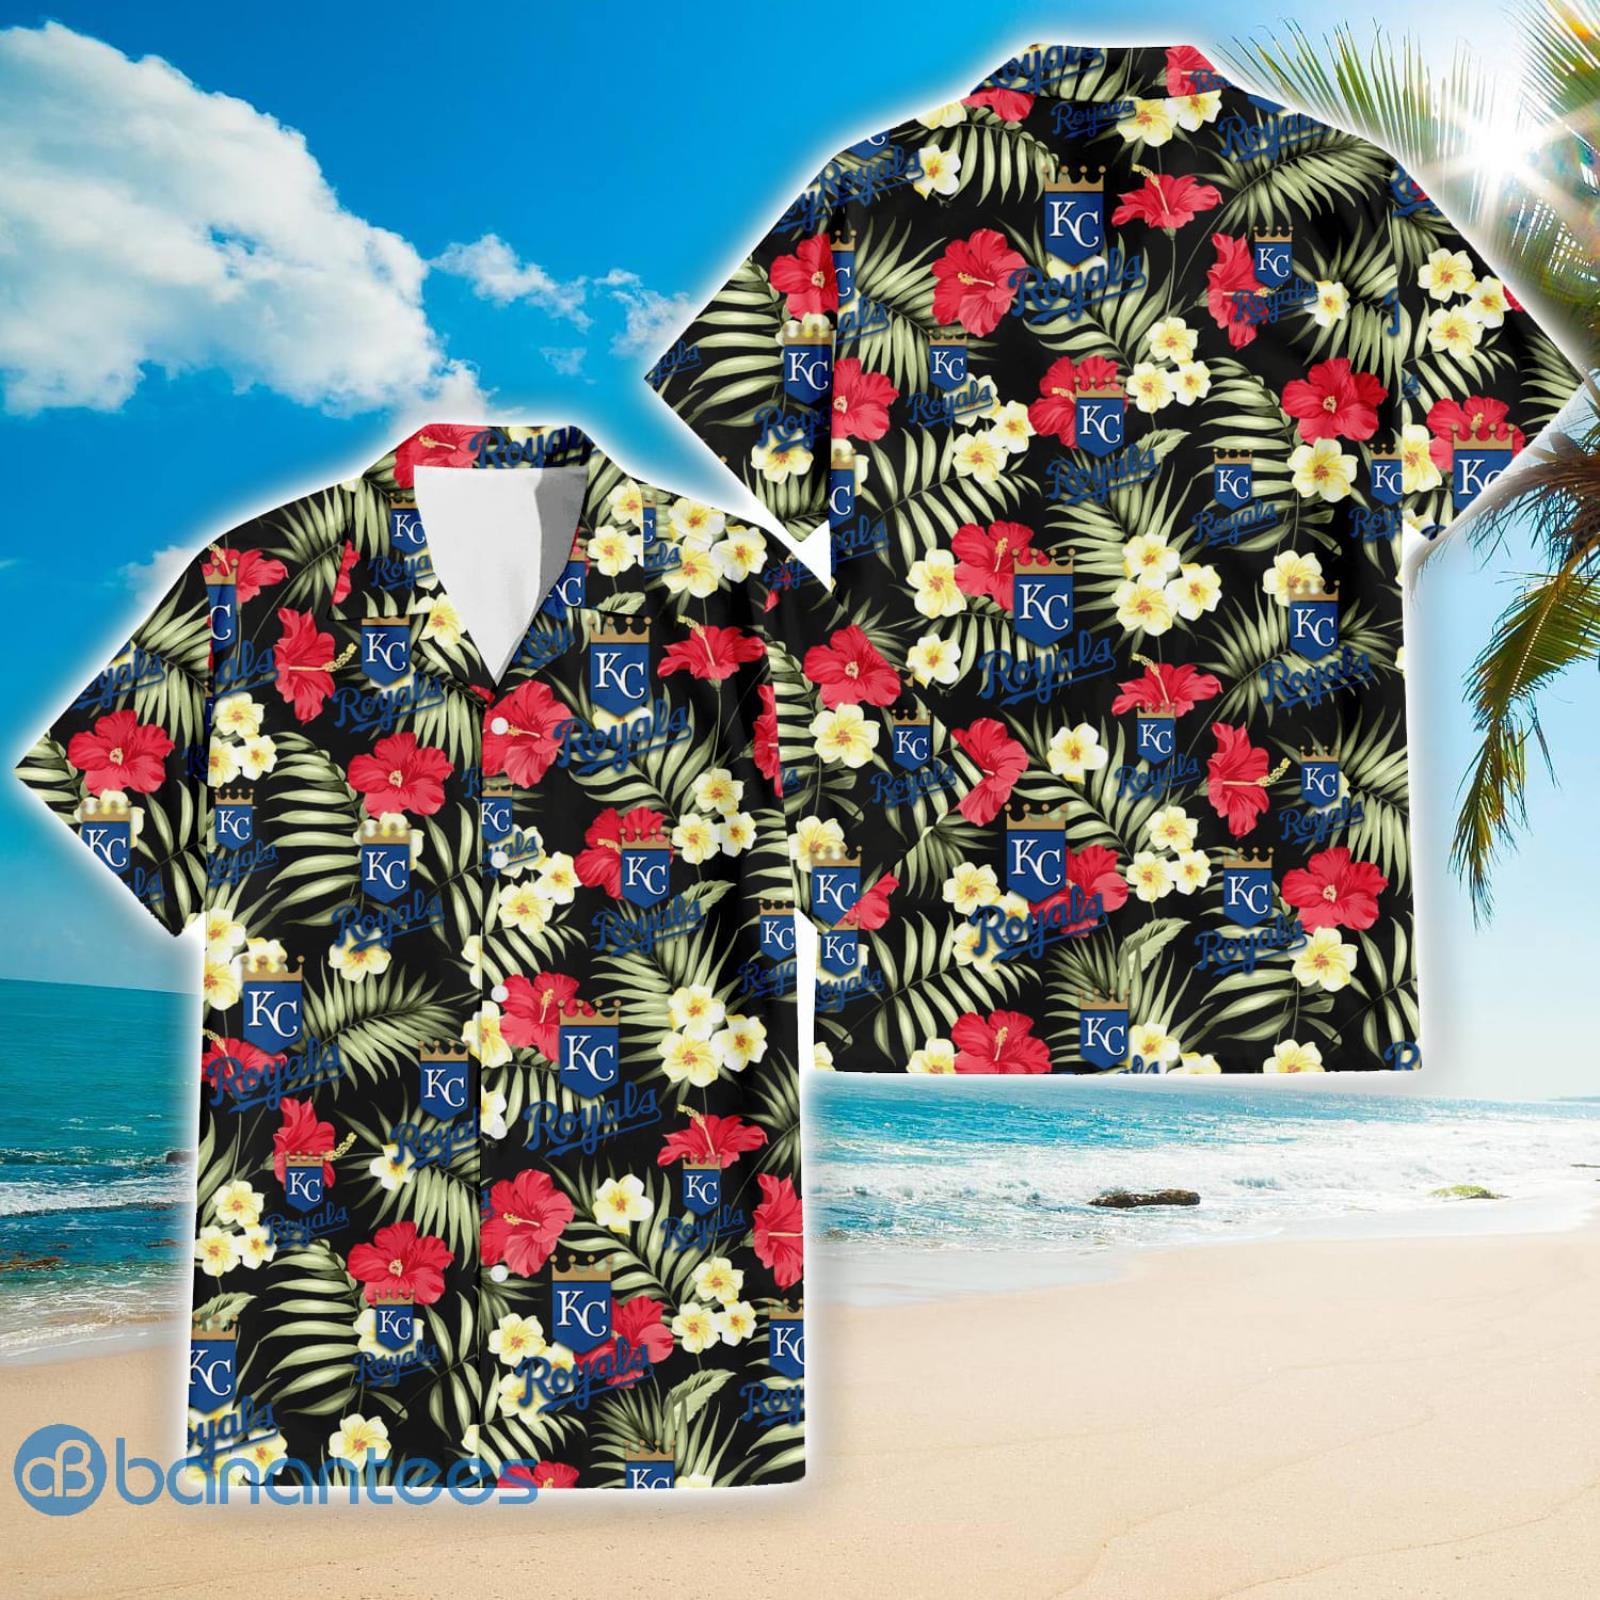 Kansas City Royals Hawaiian Shirt And Shorts Inspired By Kc Royals